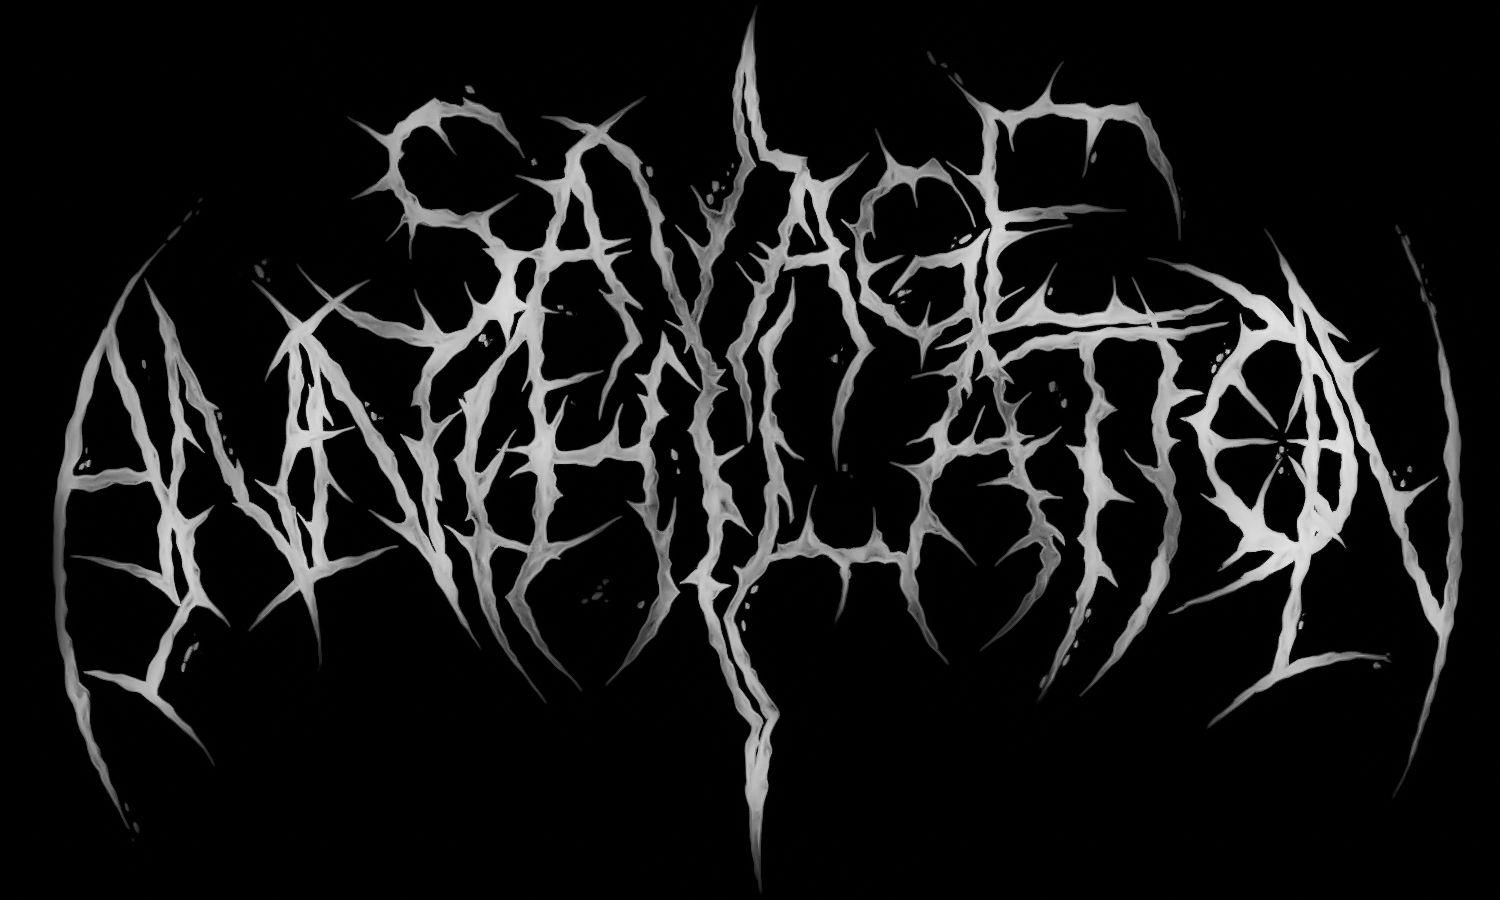 Savage Band's Logo - Savage Annihilation #logo | 图案 | Pinterest | Savage, Logos and ...